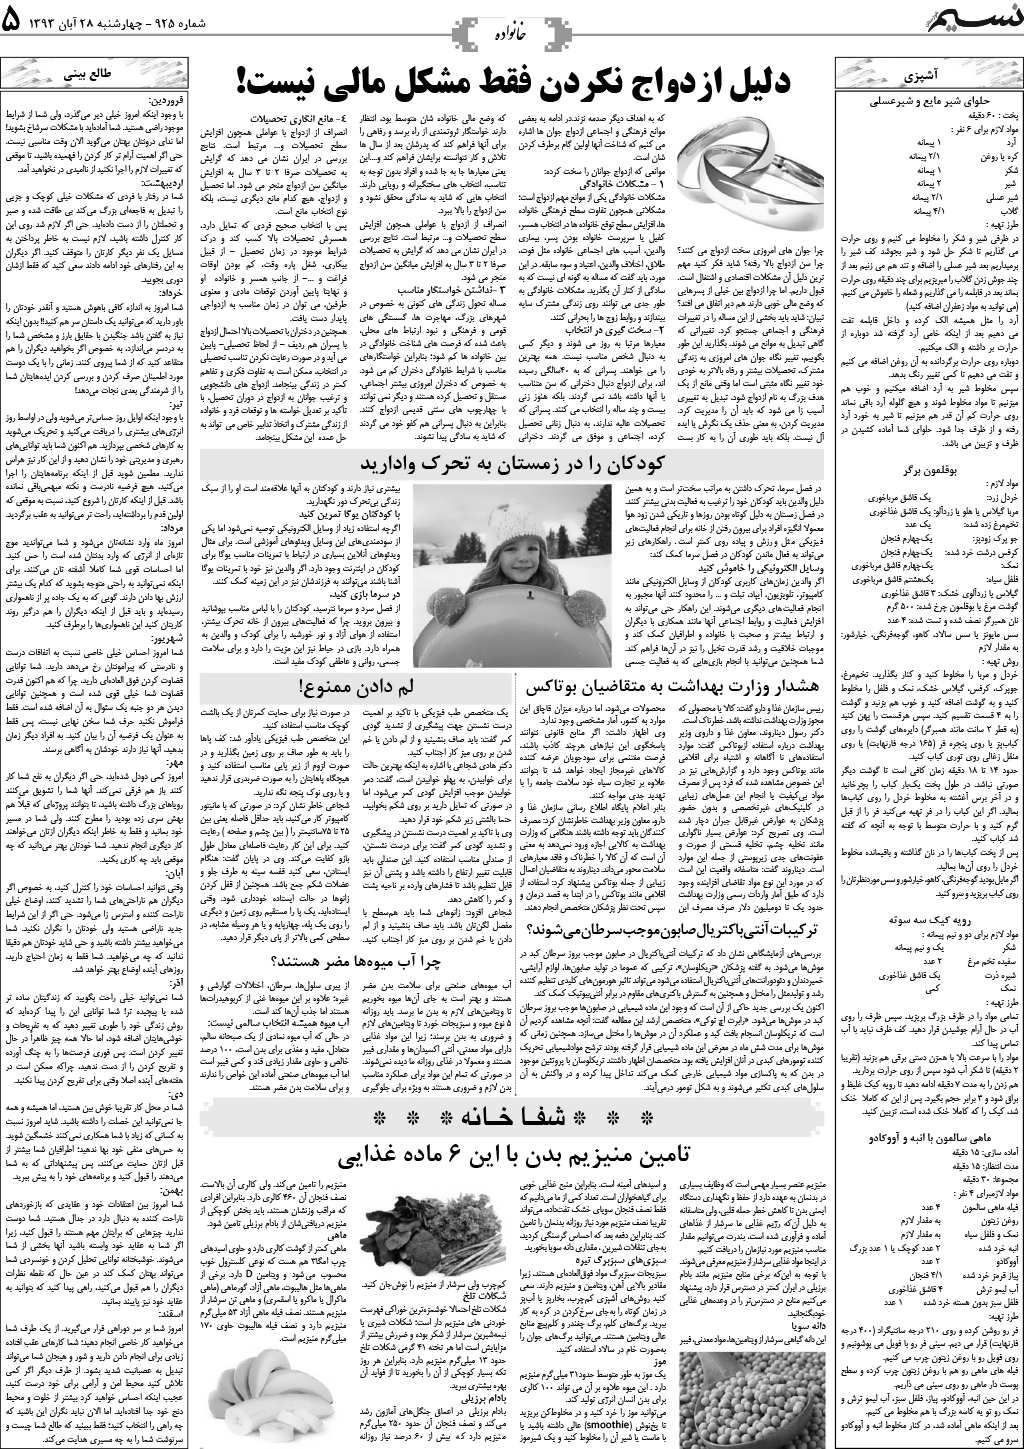 صفحه خانواده روزنامه نسیم شماره 925